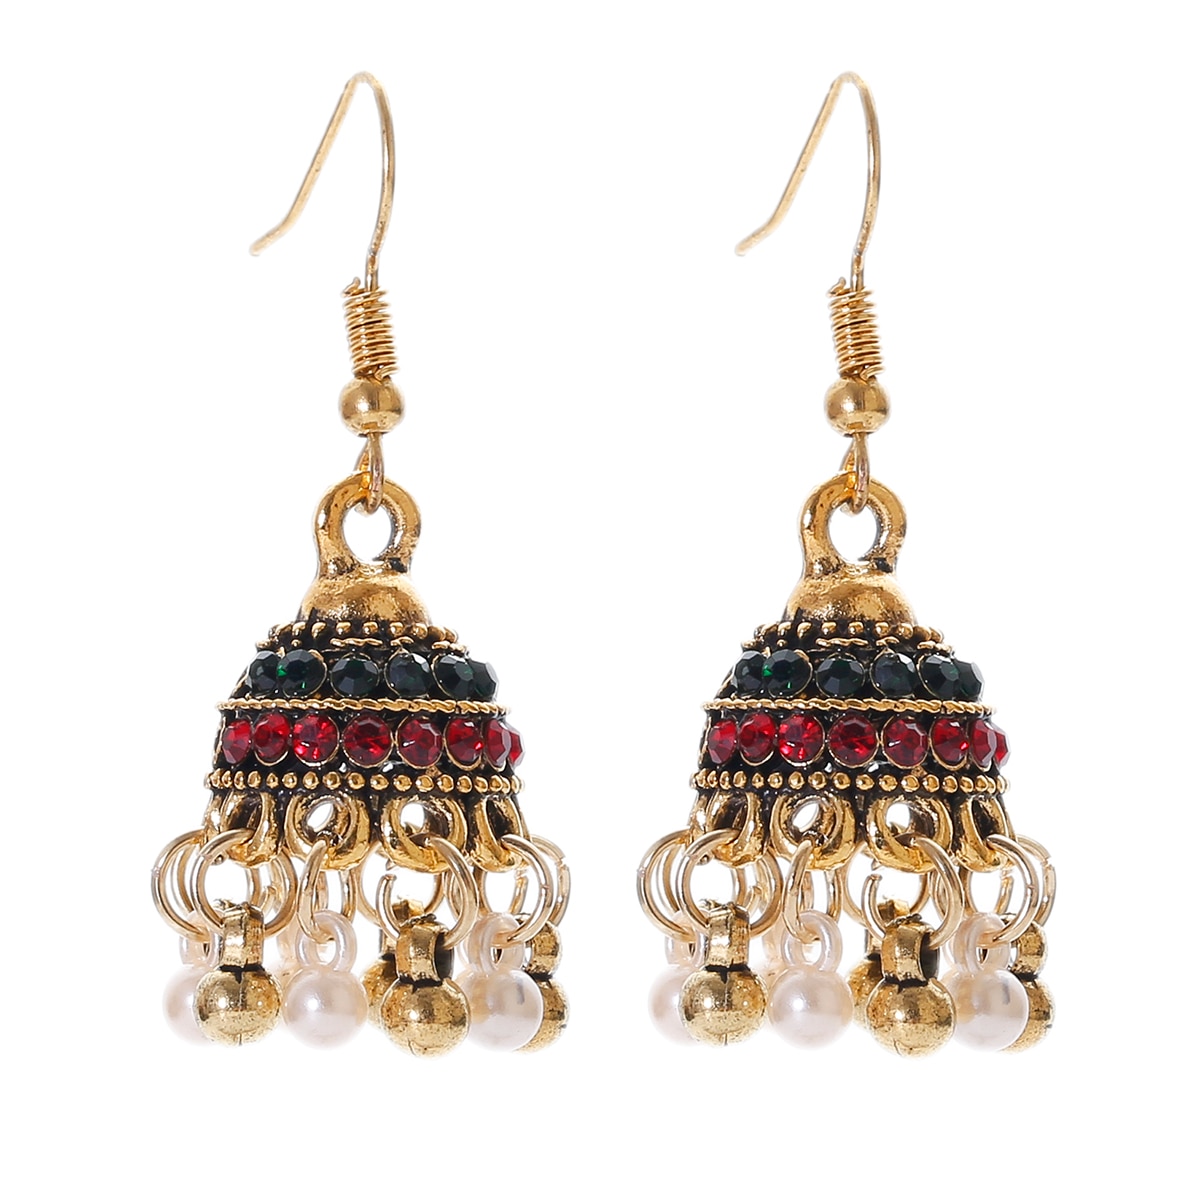 Retro-Classic-Small-Bell-CZ-Earrings-Women39s-Ethnic-Pearl-Tassel-Earrings-Piercing-Wedding-Jewelry--1005004294998889-5